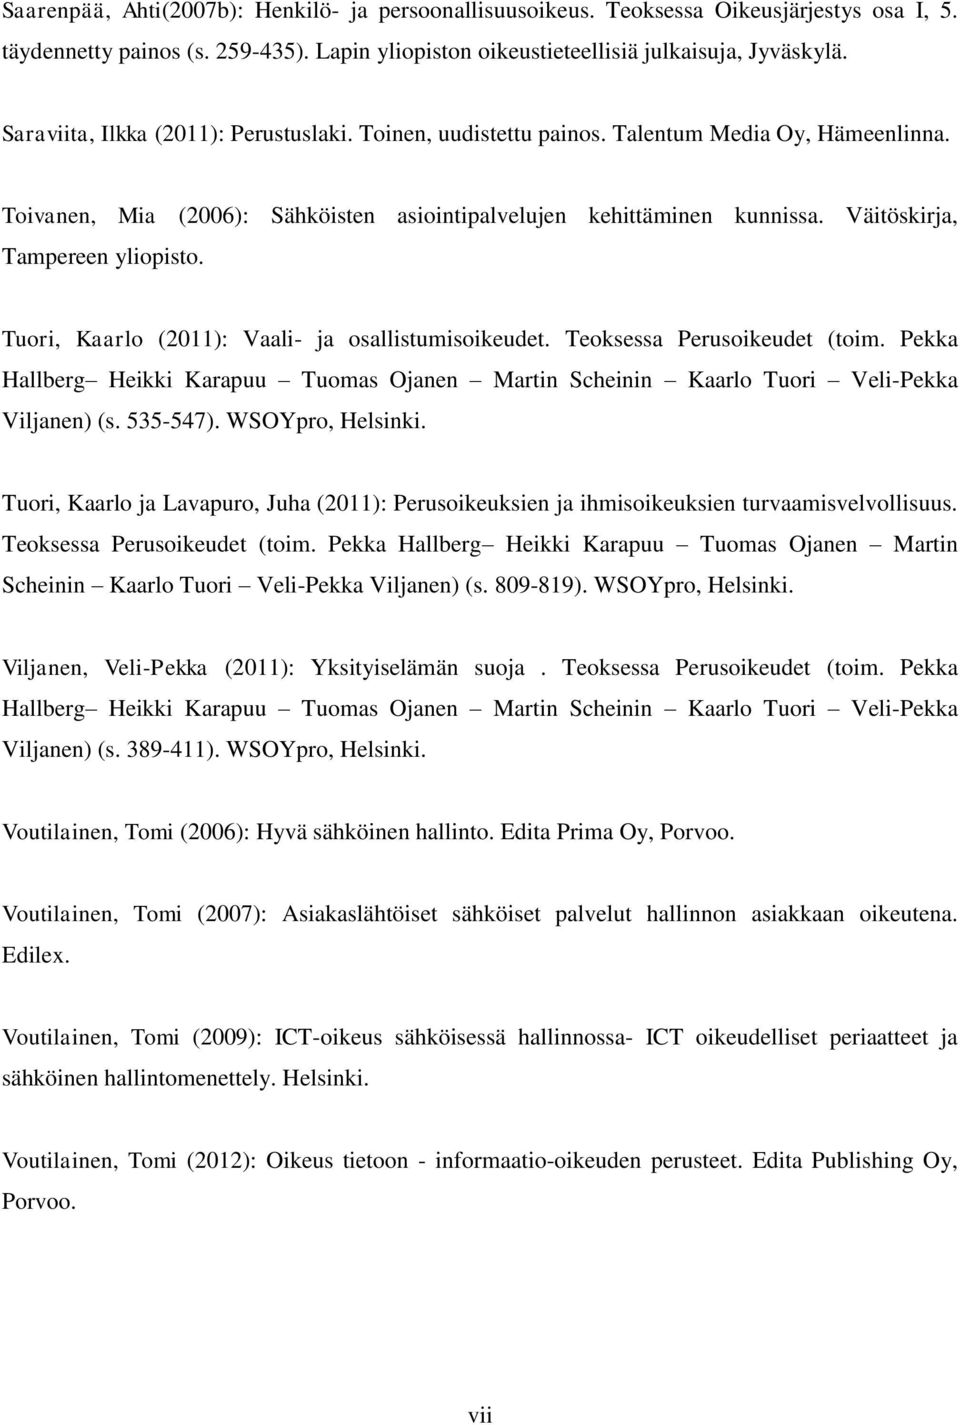 Väitöskirja, Tampereen yliopisto. Tuori, Kaarlo (2011): Vaali- ja osallistumisoikeudet. Teoksessa Perusoikeudet (toim.